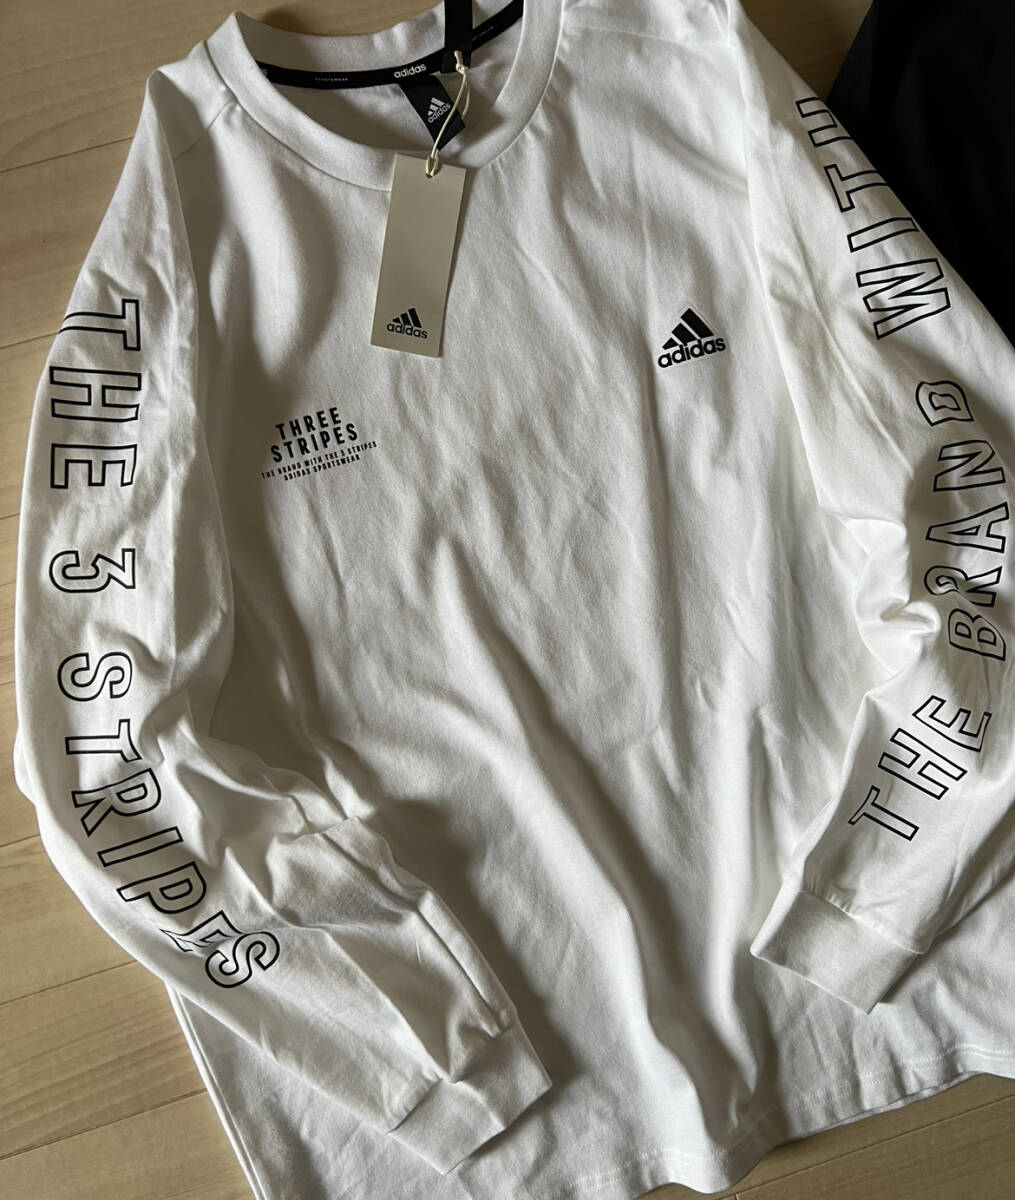 adidas# Adidas Roo z Fit heavy одиночный джерси - long T 2 шт. комплект чёрный белый футболка с длинным рукавом толстый 24\' весна модель стандартный товар (XL)